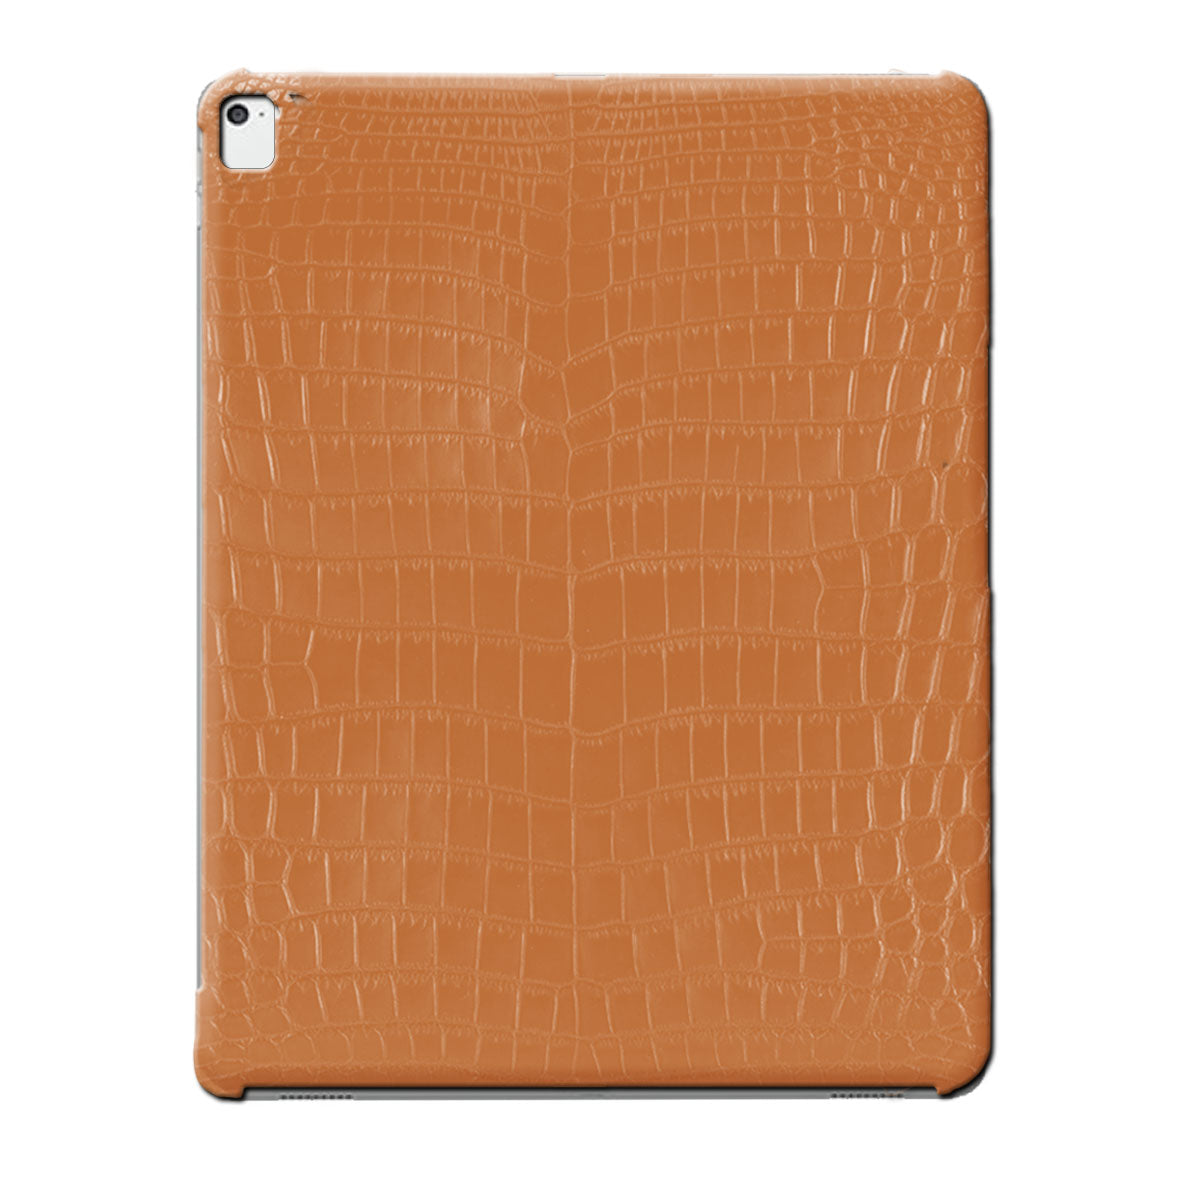 Coque / Cover cuir pour iPad Pro 12.9 (1e à 6e génération) - Alligator